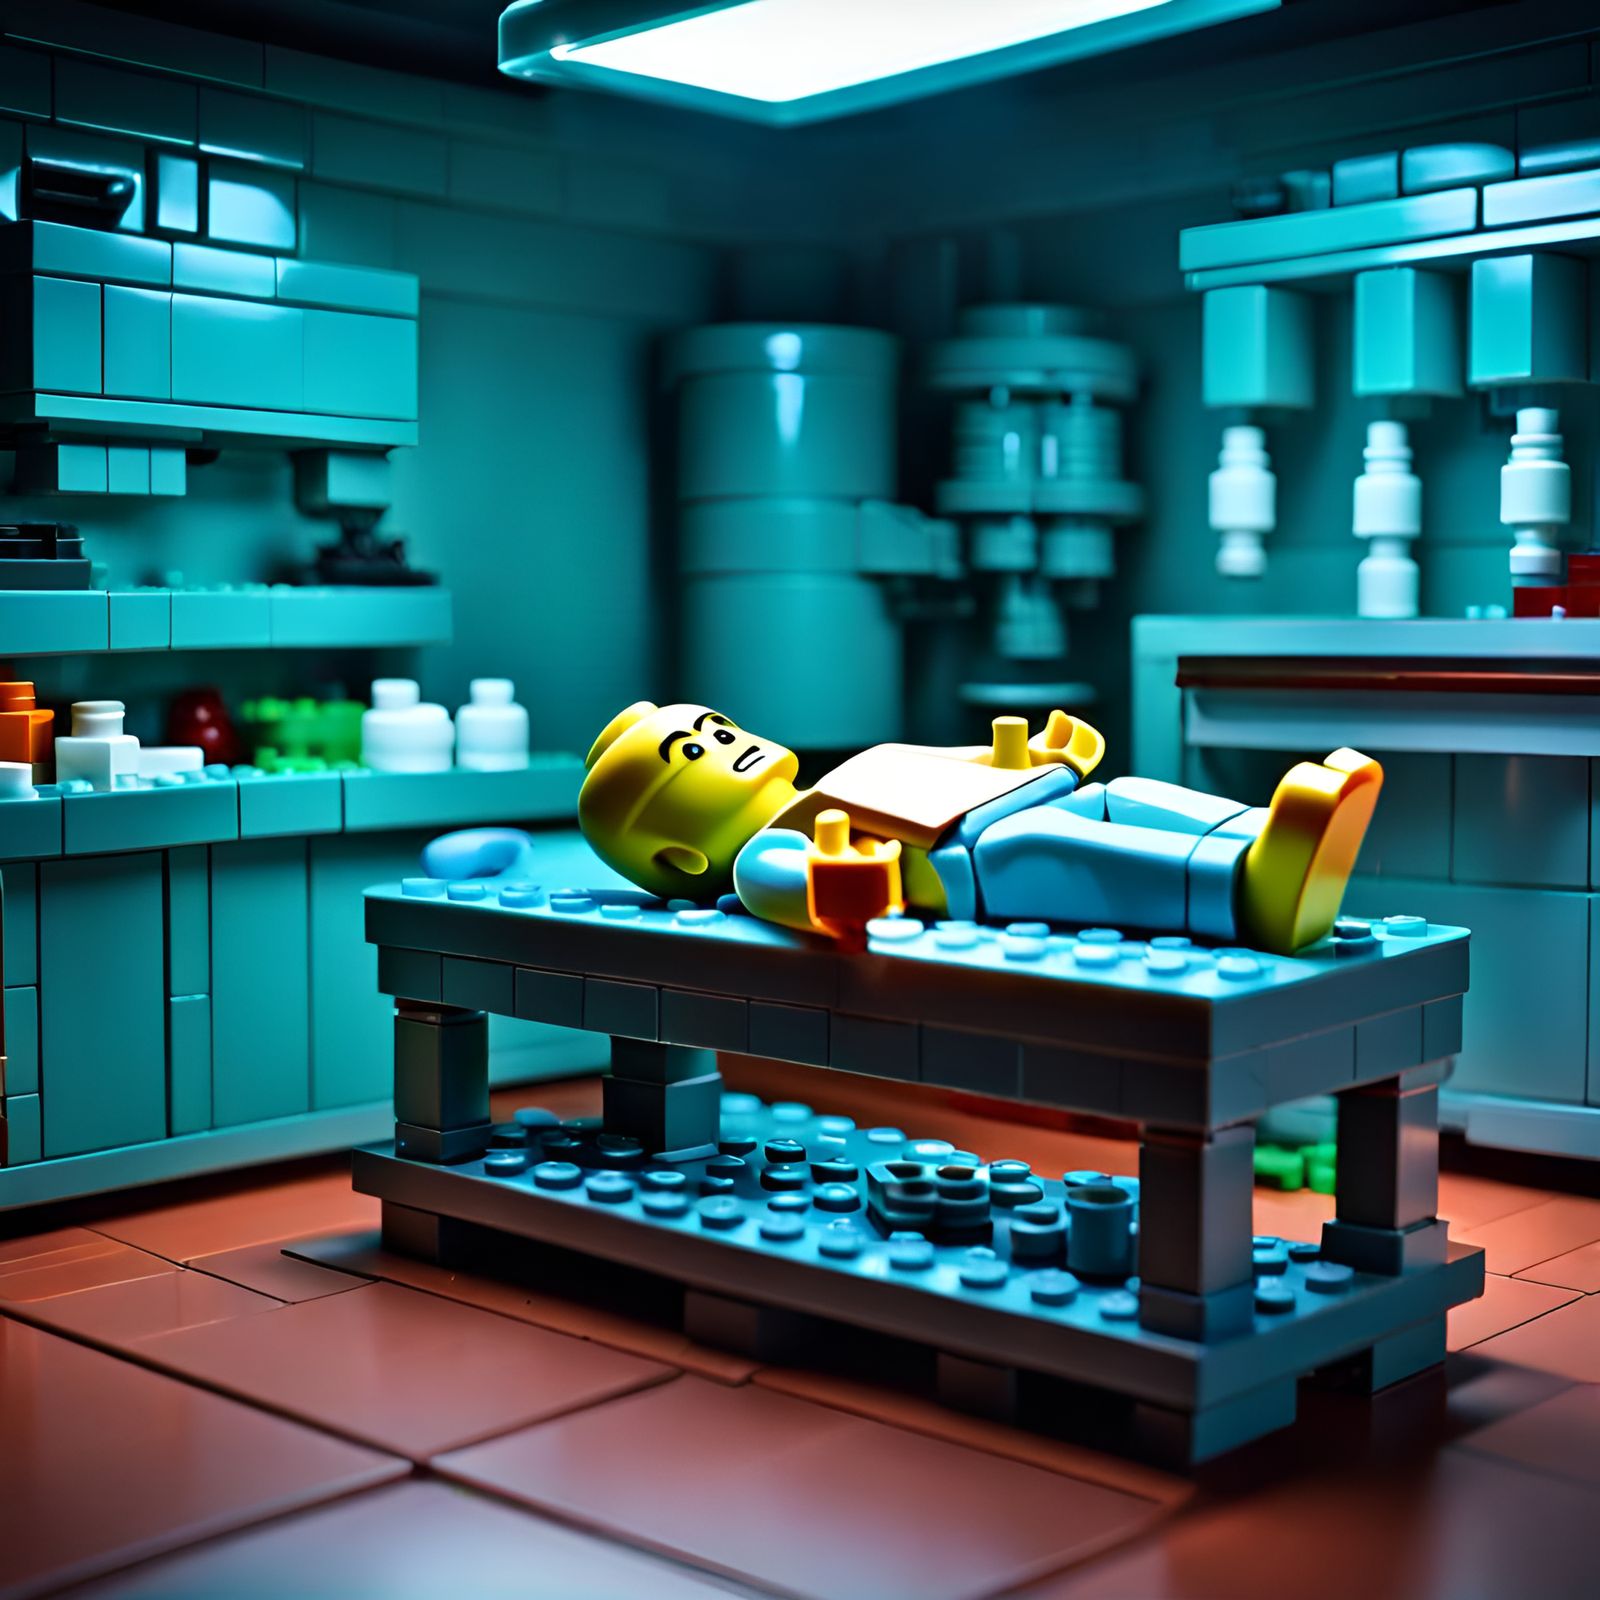 Lego Robe̸̢̹͒̑̓̇̇̌͑͋͝ͅͅo - AI Generated Artwork - NightCafe Creator